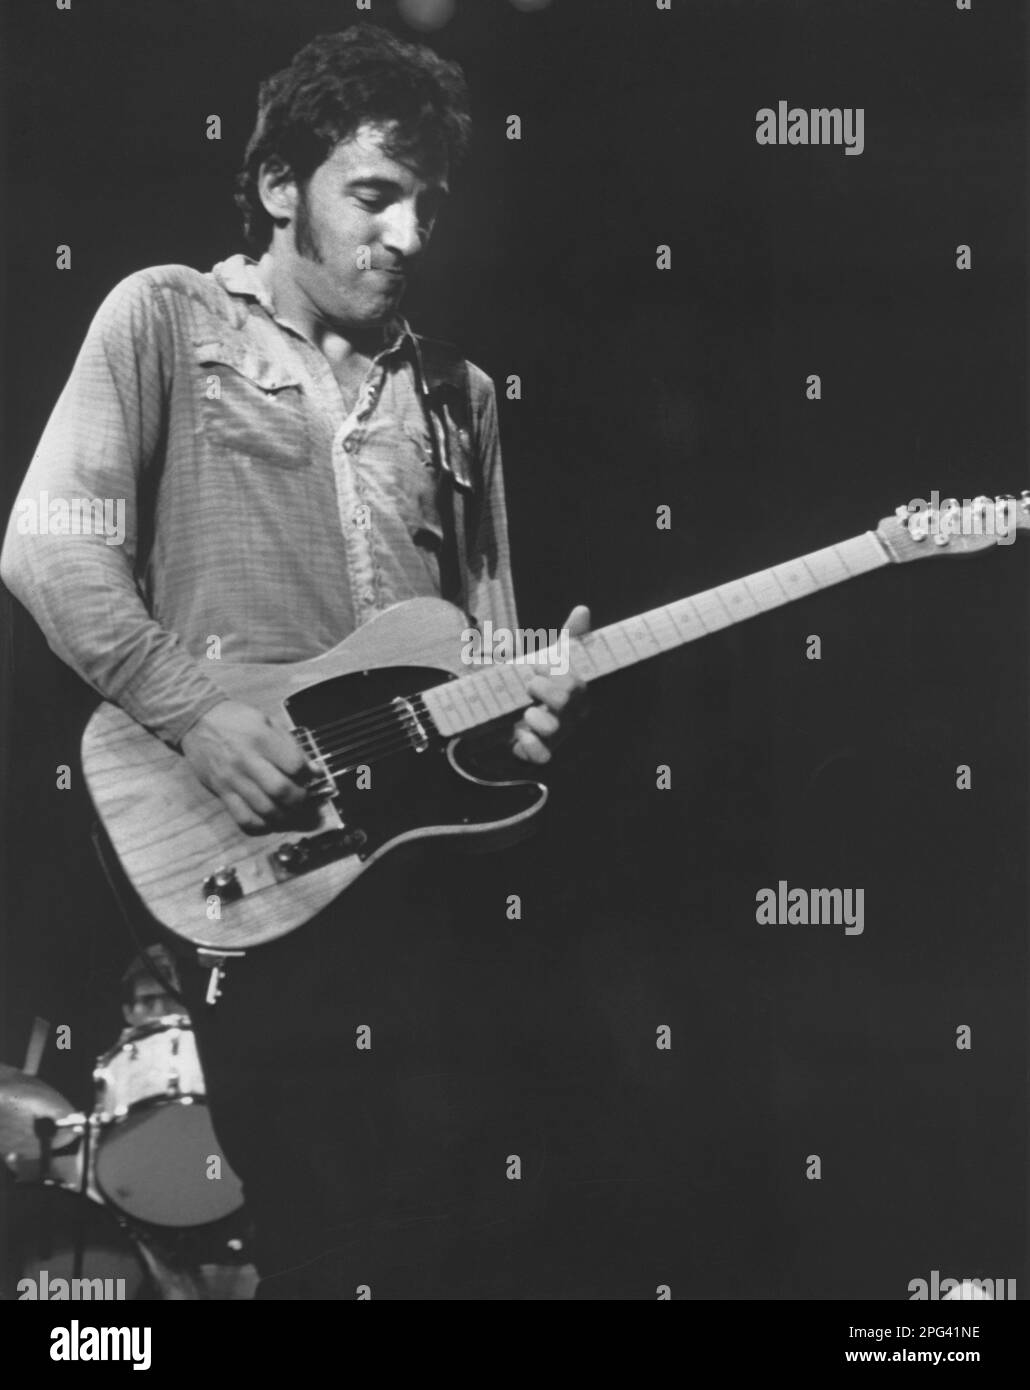 Bruce Springsteen, auteur-compositeur américain, joue de la guitare sur scène pendant un concert Banque D'Images